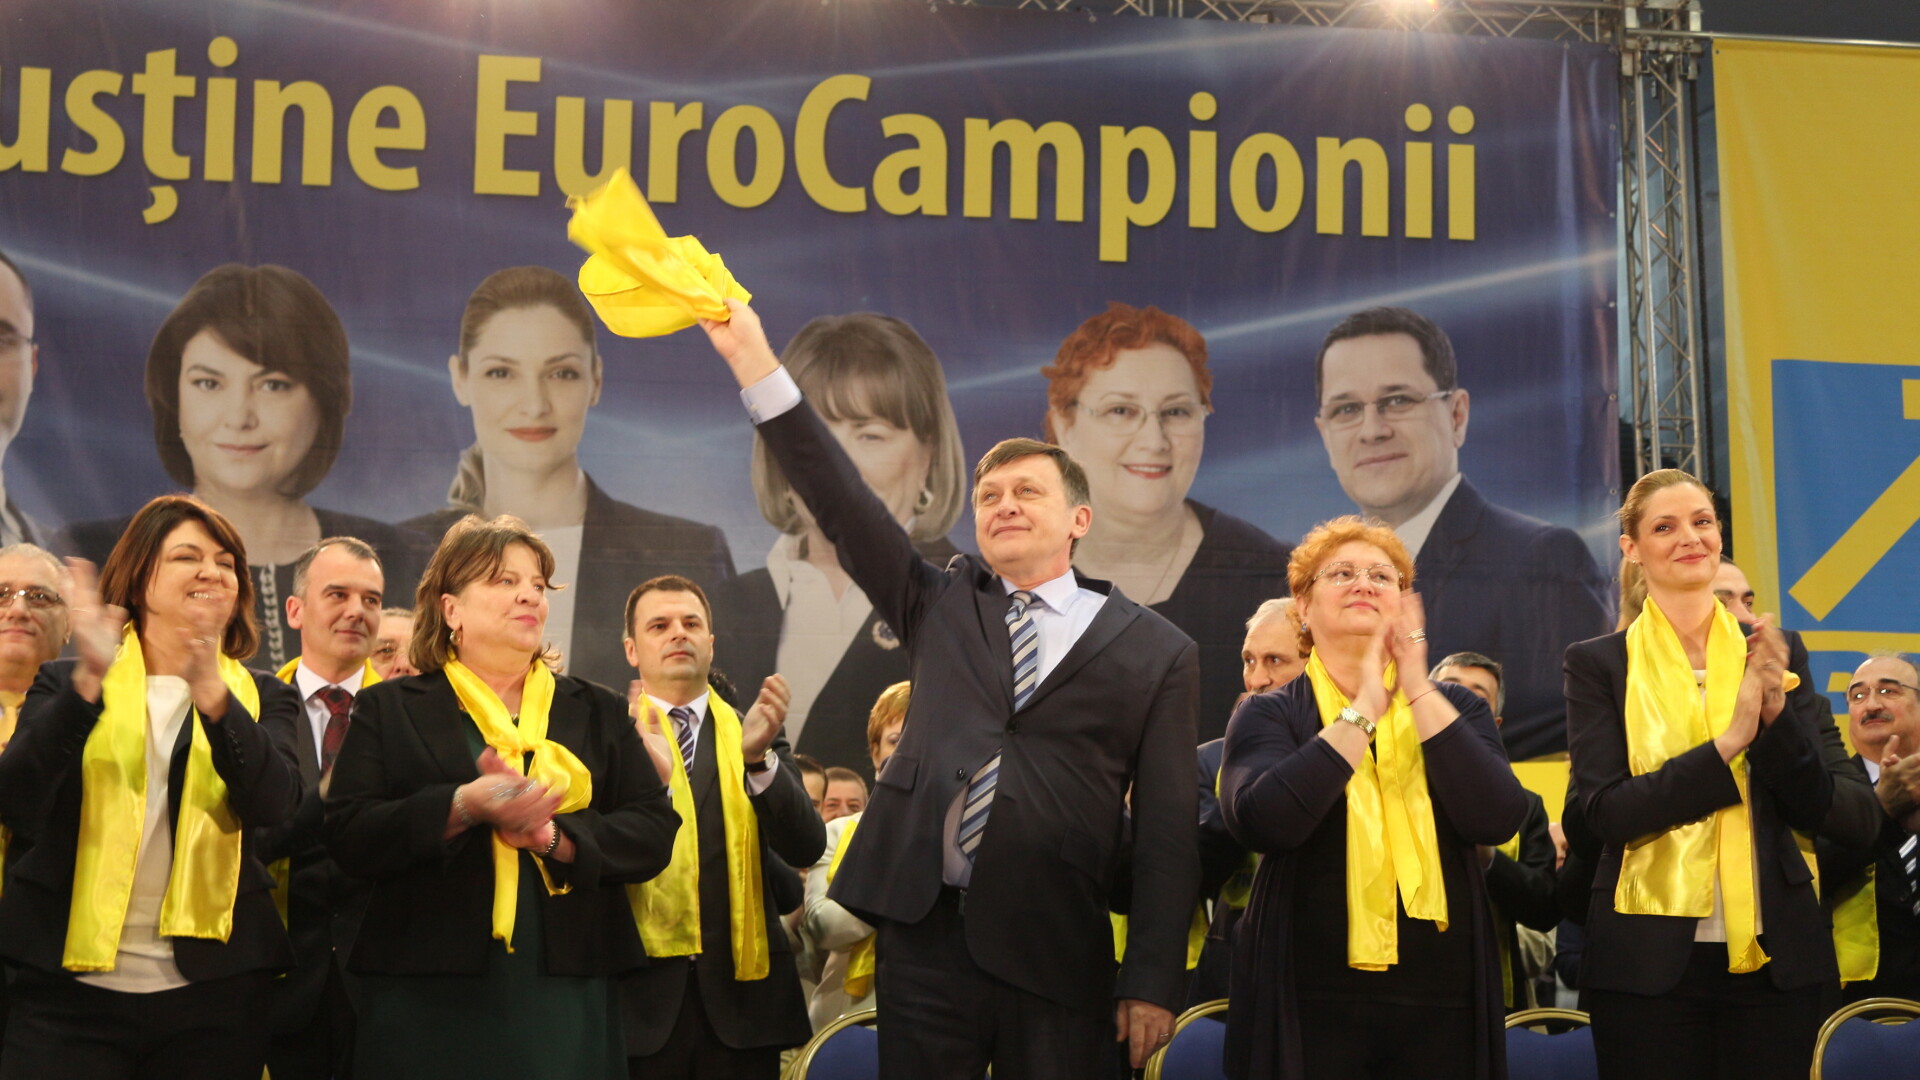 Candidati PNL la europarlamentare 2014